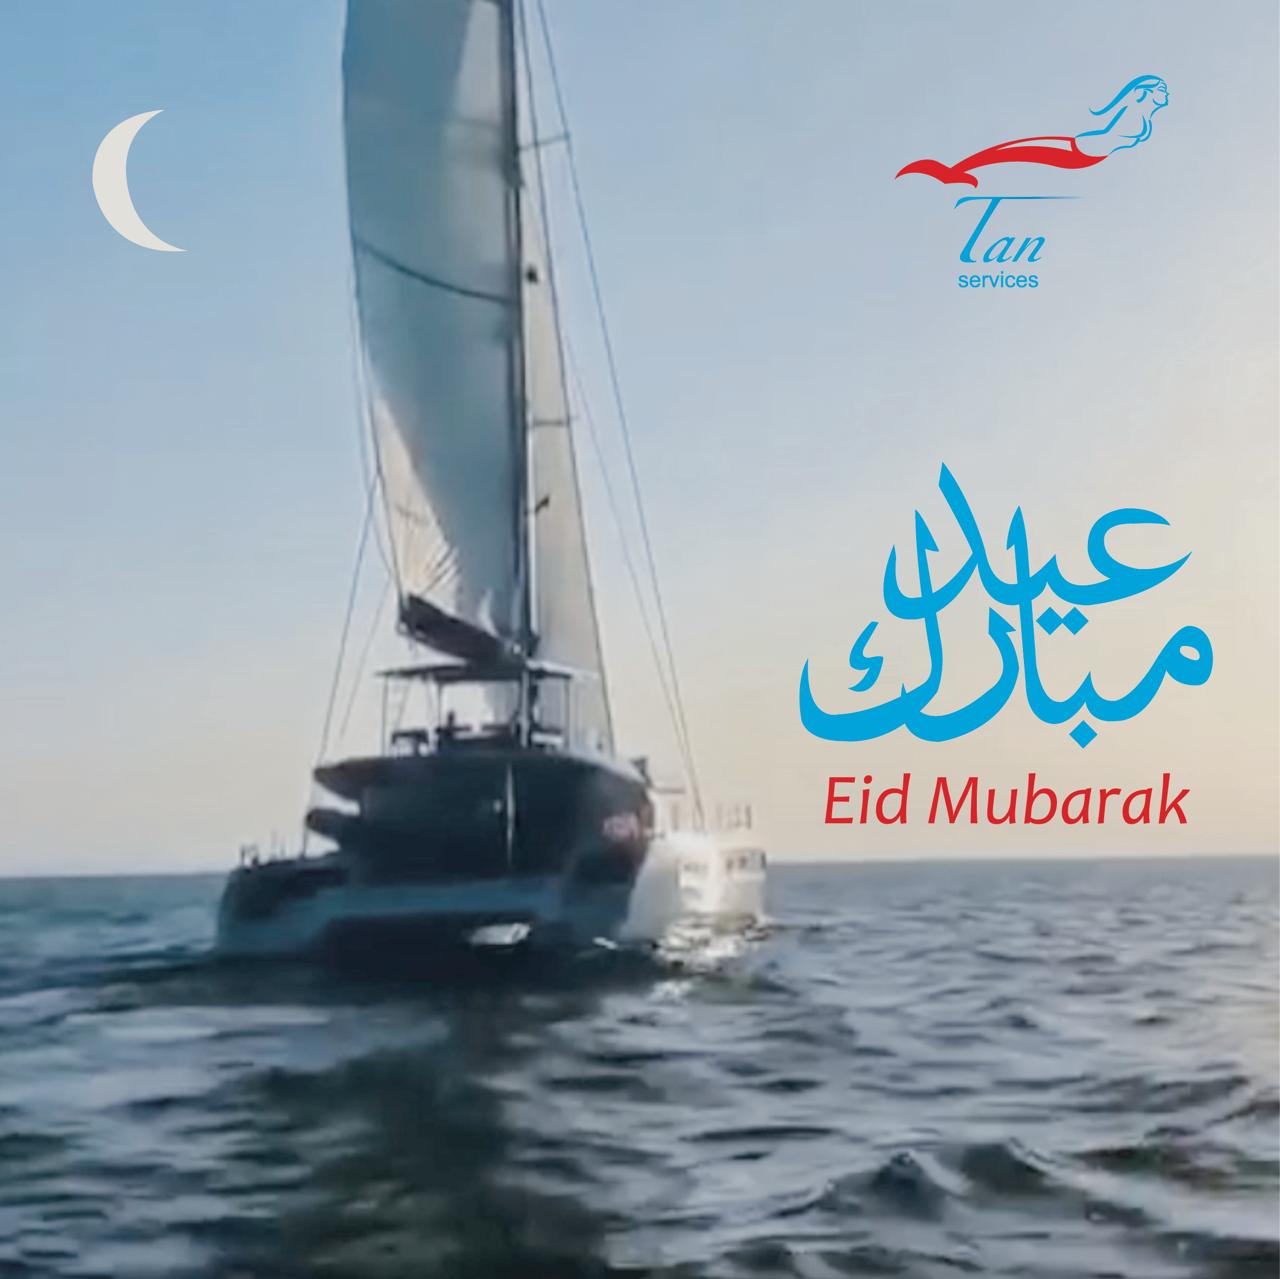 When is eid mubarak 2021